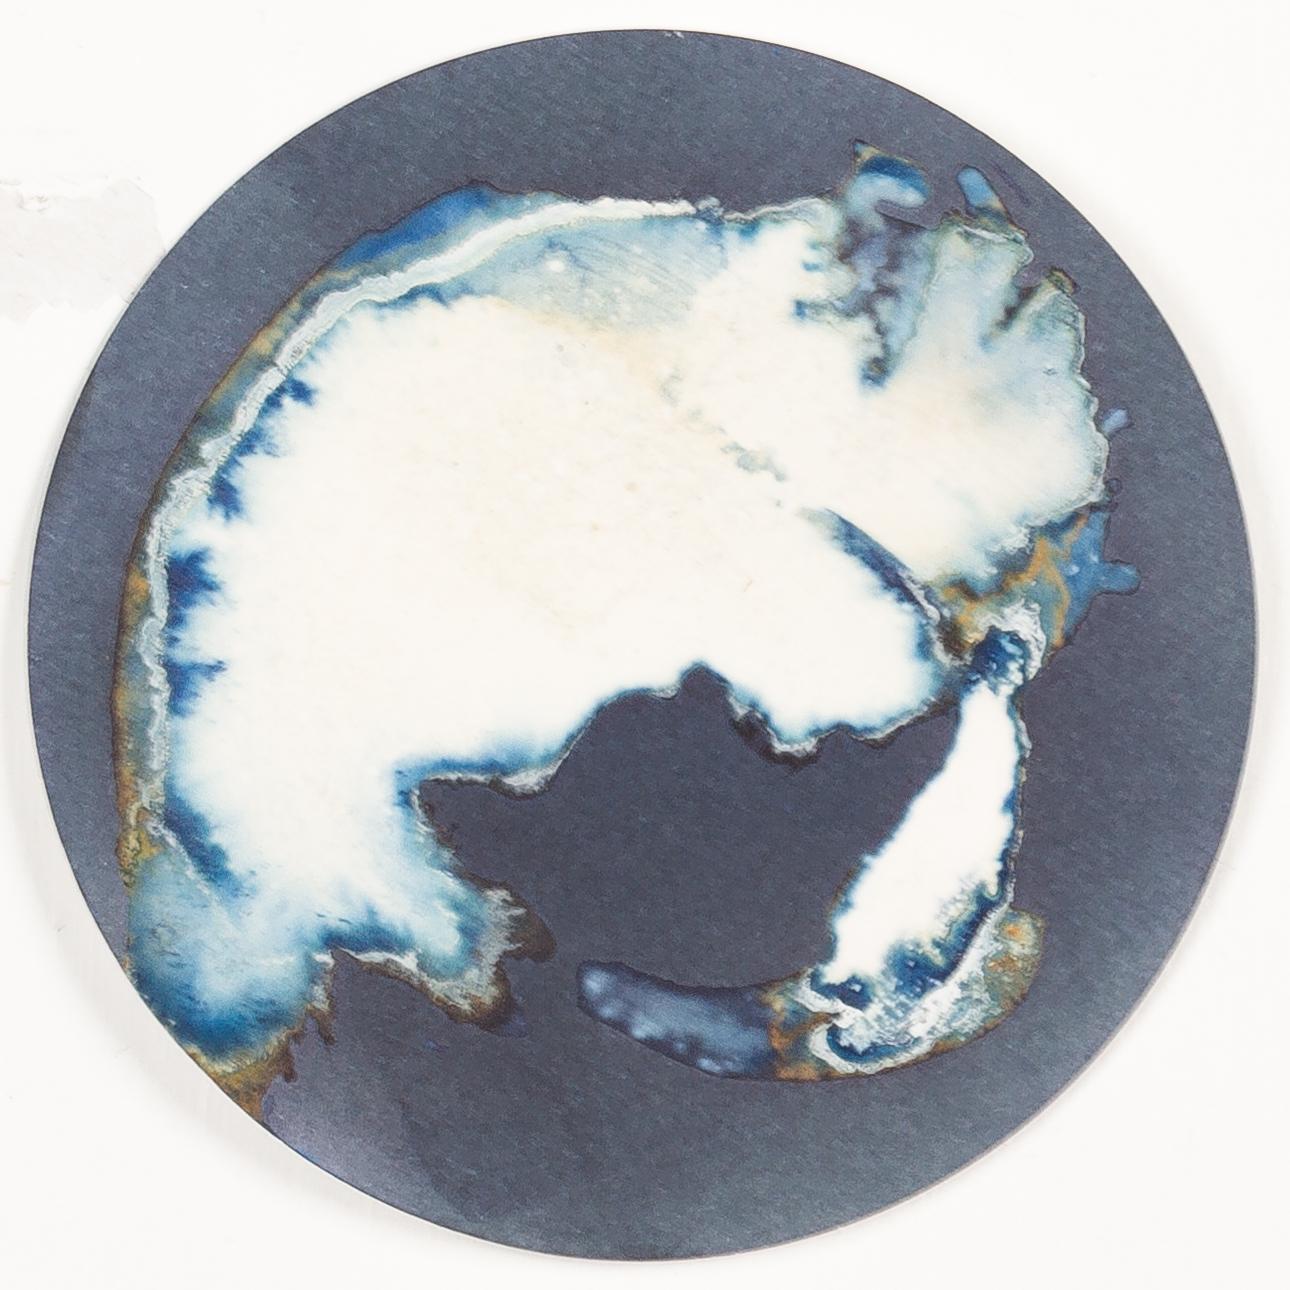 Esponjas 8, 11 und 16. Cyanotypie-Fotografien, montiert in einer hochfesten Glasschale im Angebot 2